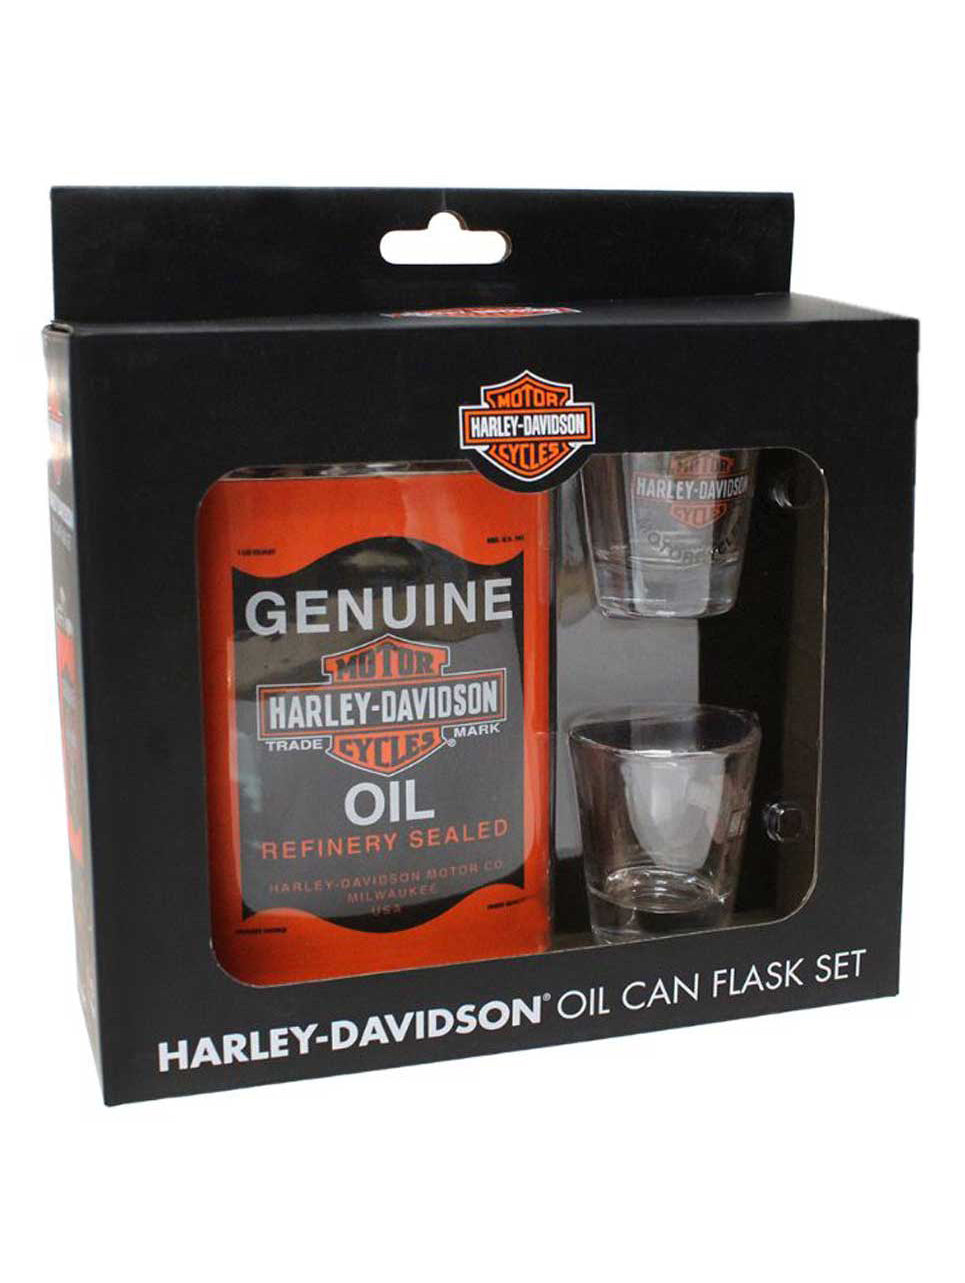 Juego de regalo de petaca y vaso de chupito con lata de aceite original Harley-Davidson, HDL-18557, Harley Davidson